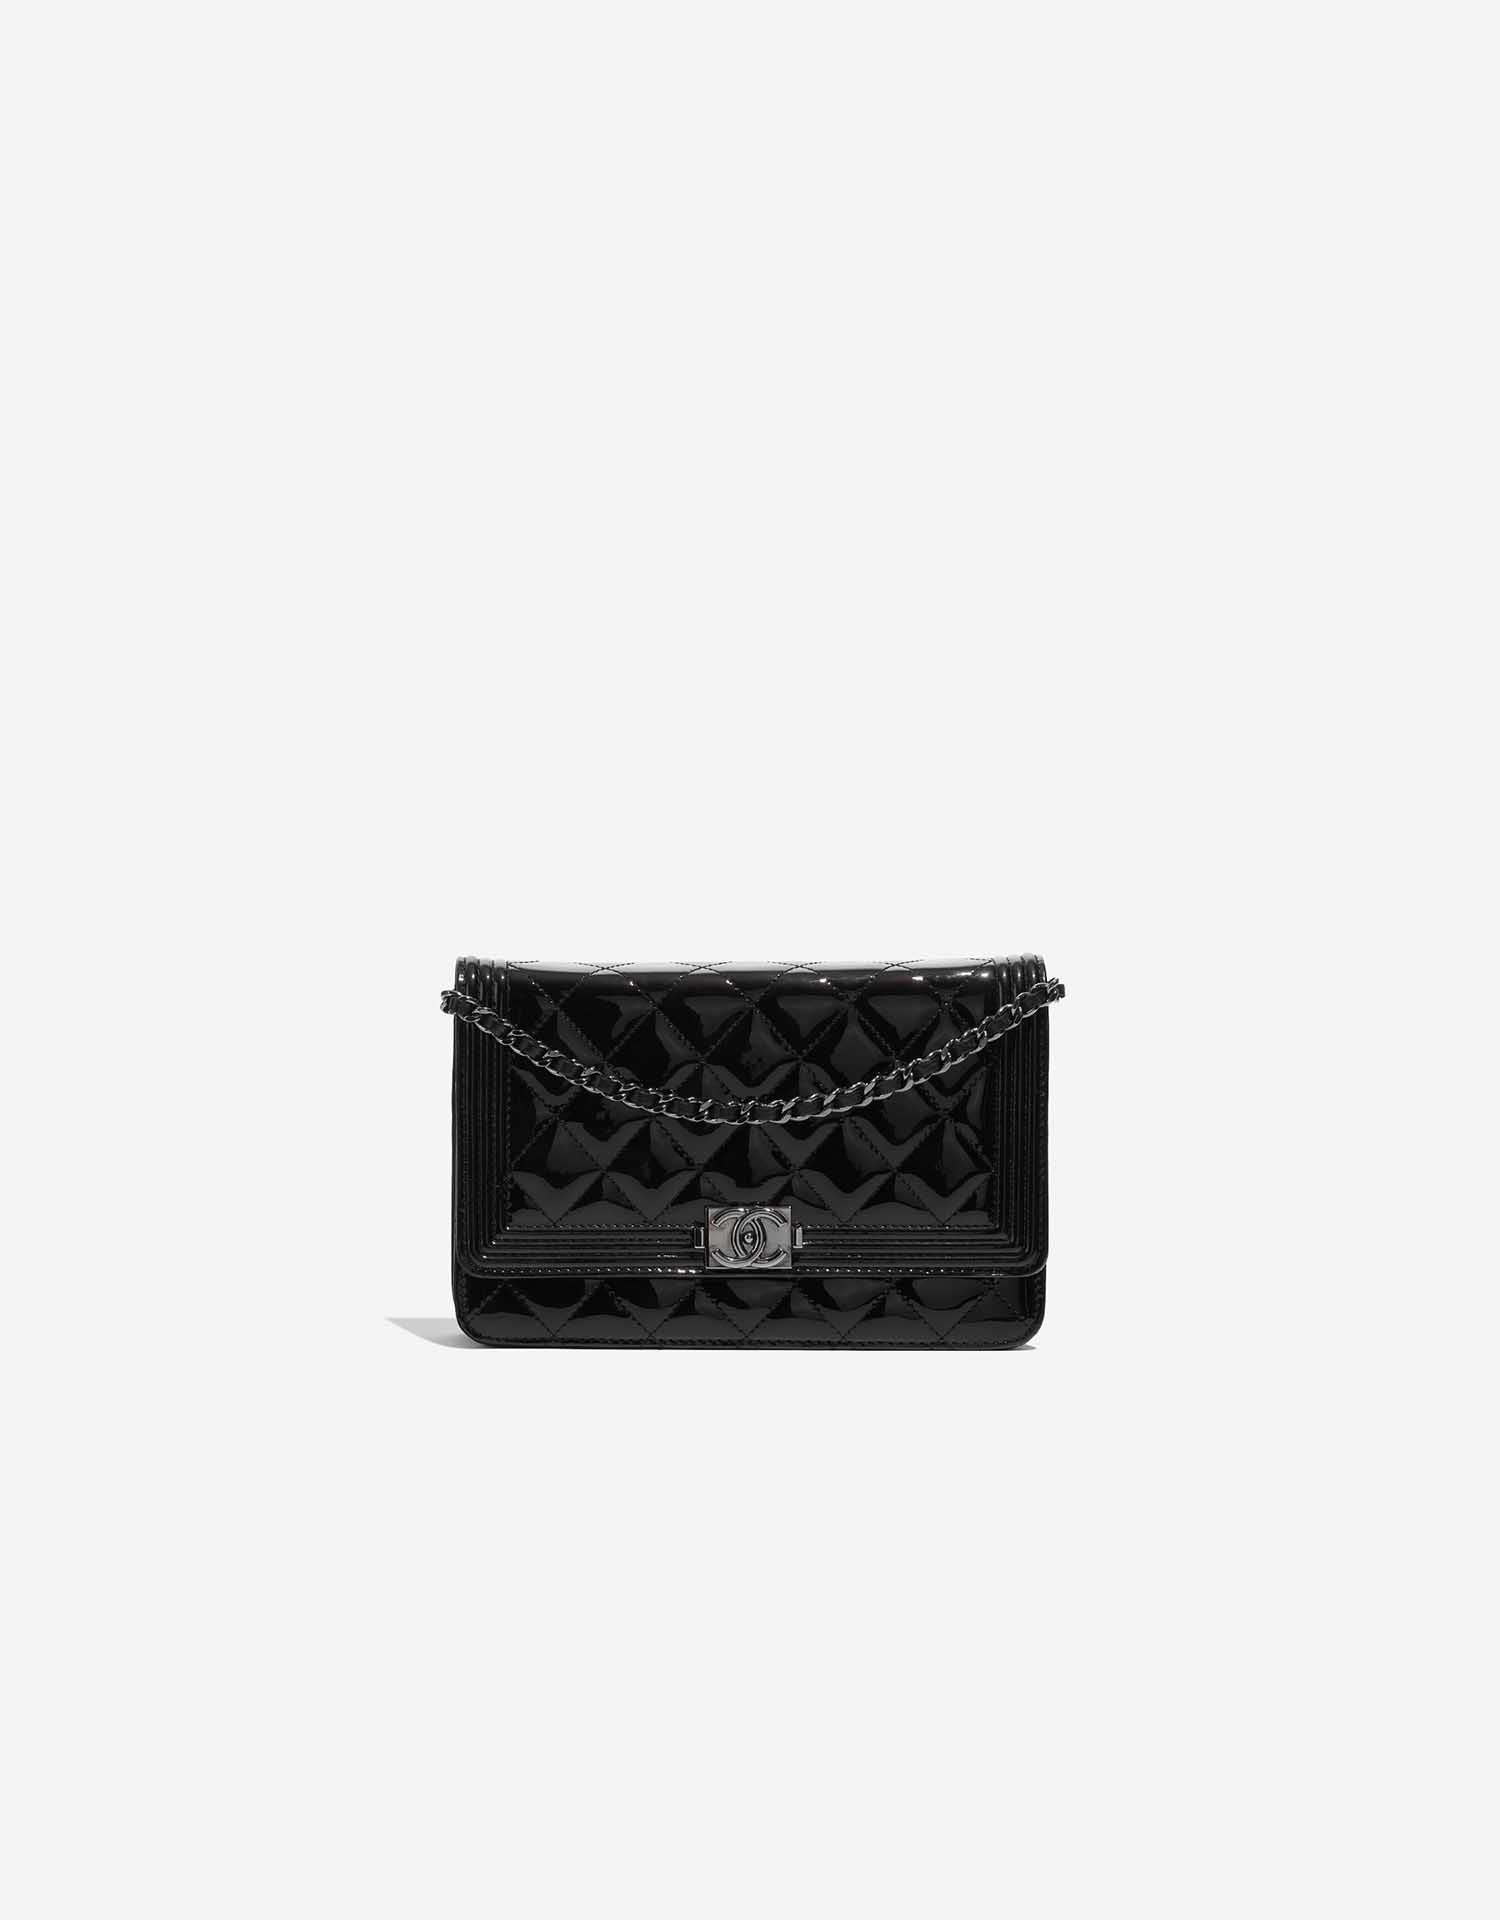 Chanel Boy WOC Patent Leather Black | SACLÀB